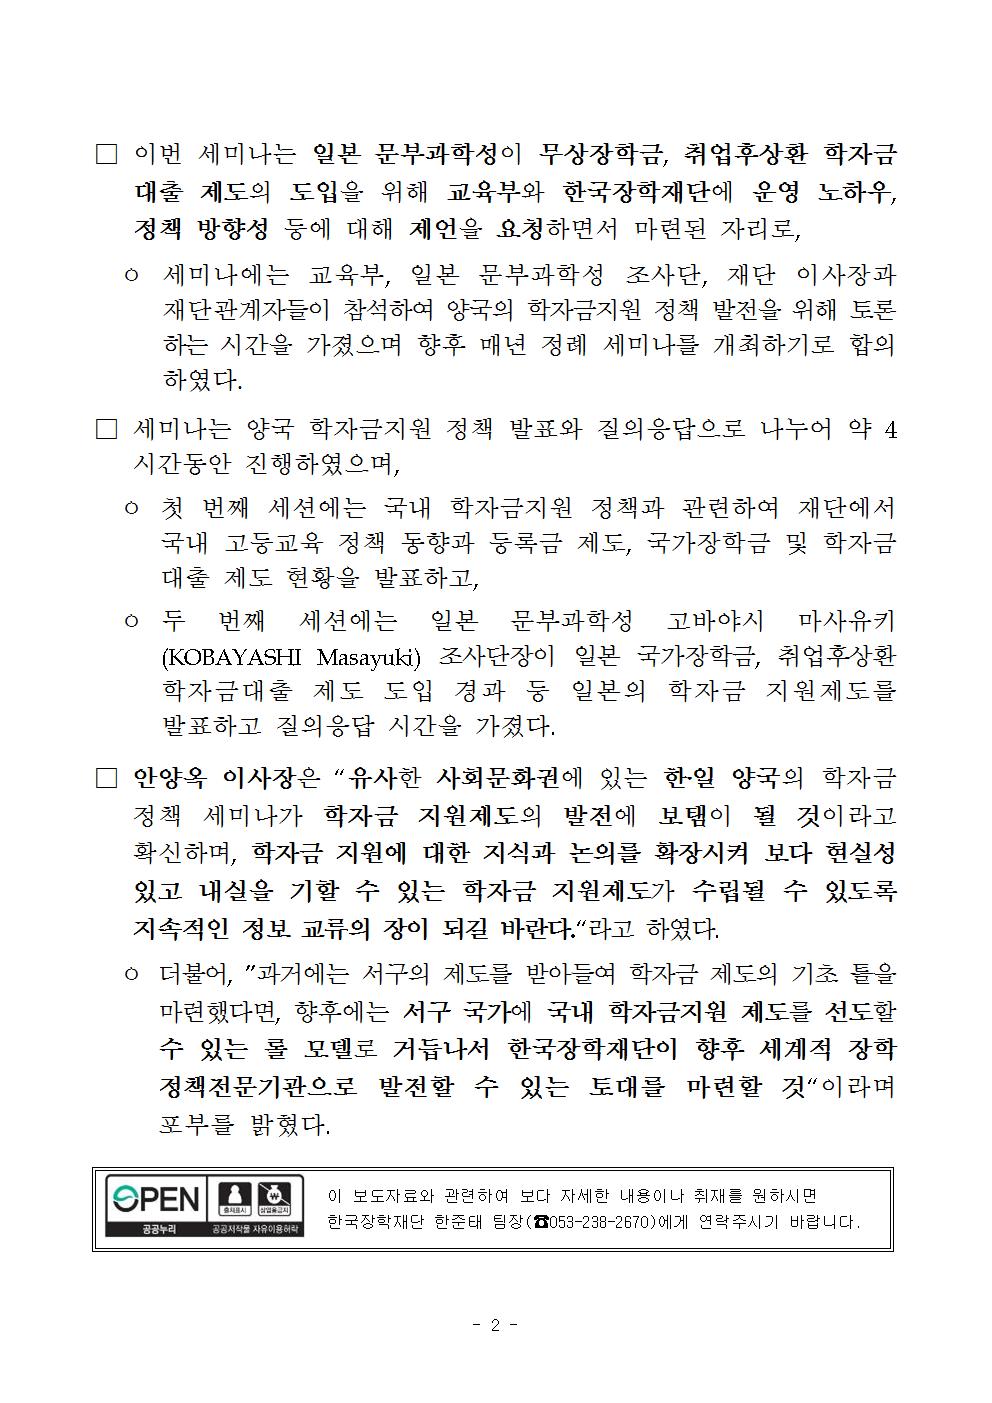 02-23(목)[보도자료]_한일_학자금지원_정책_세미나_개최002.jpg